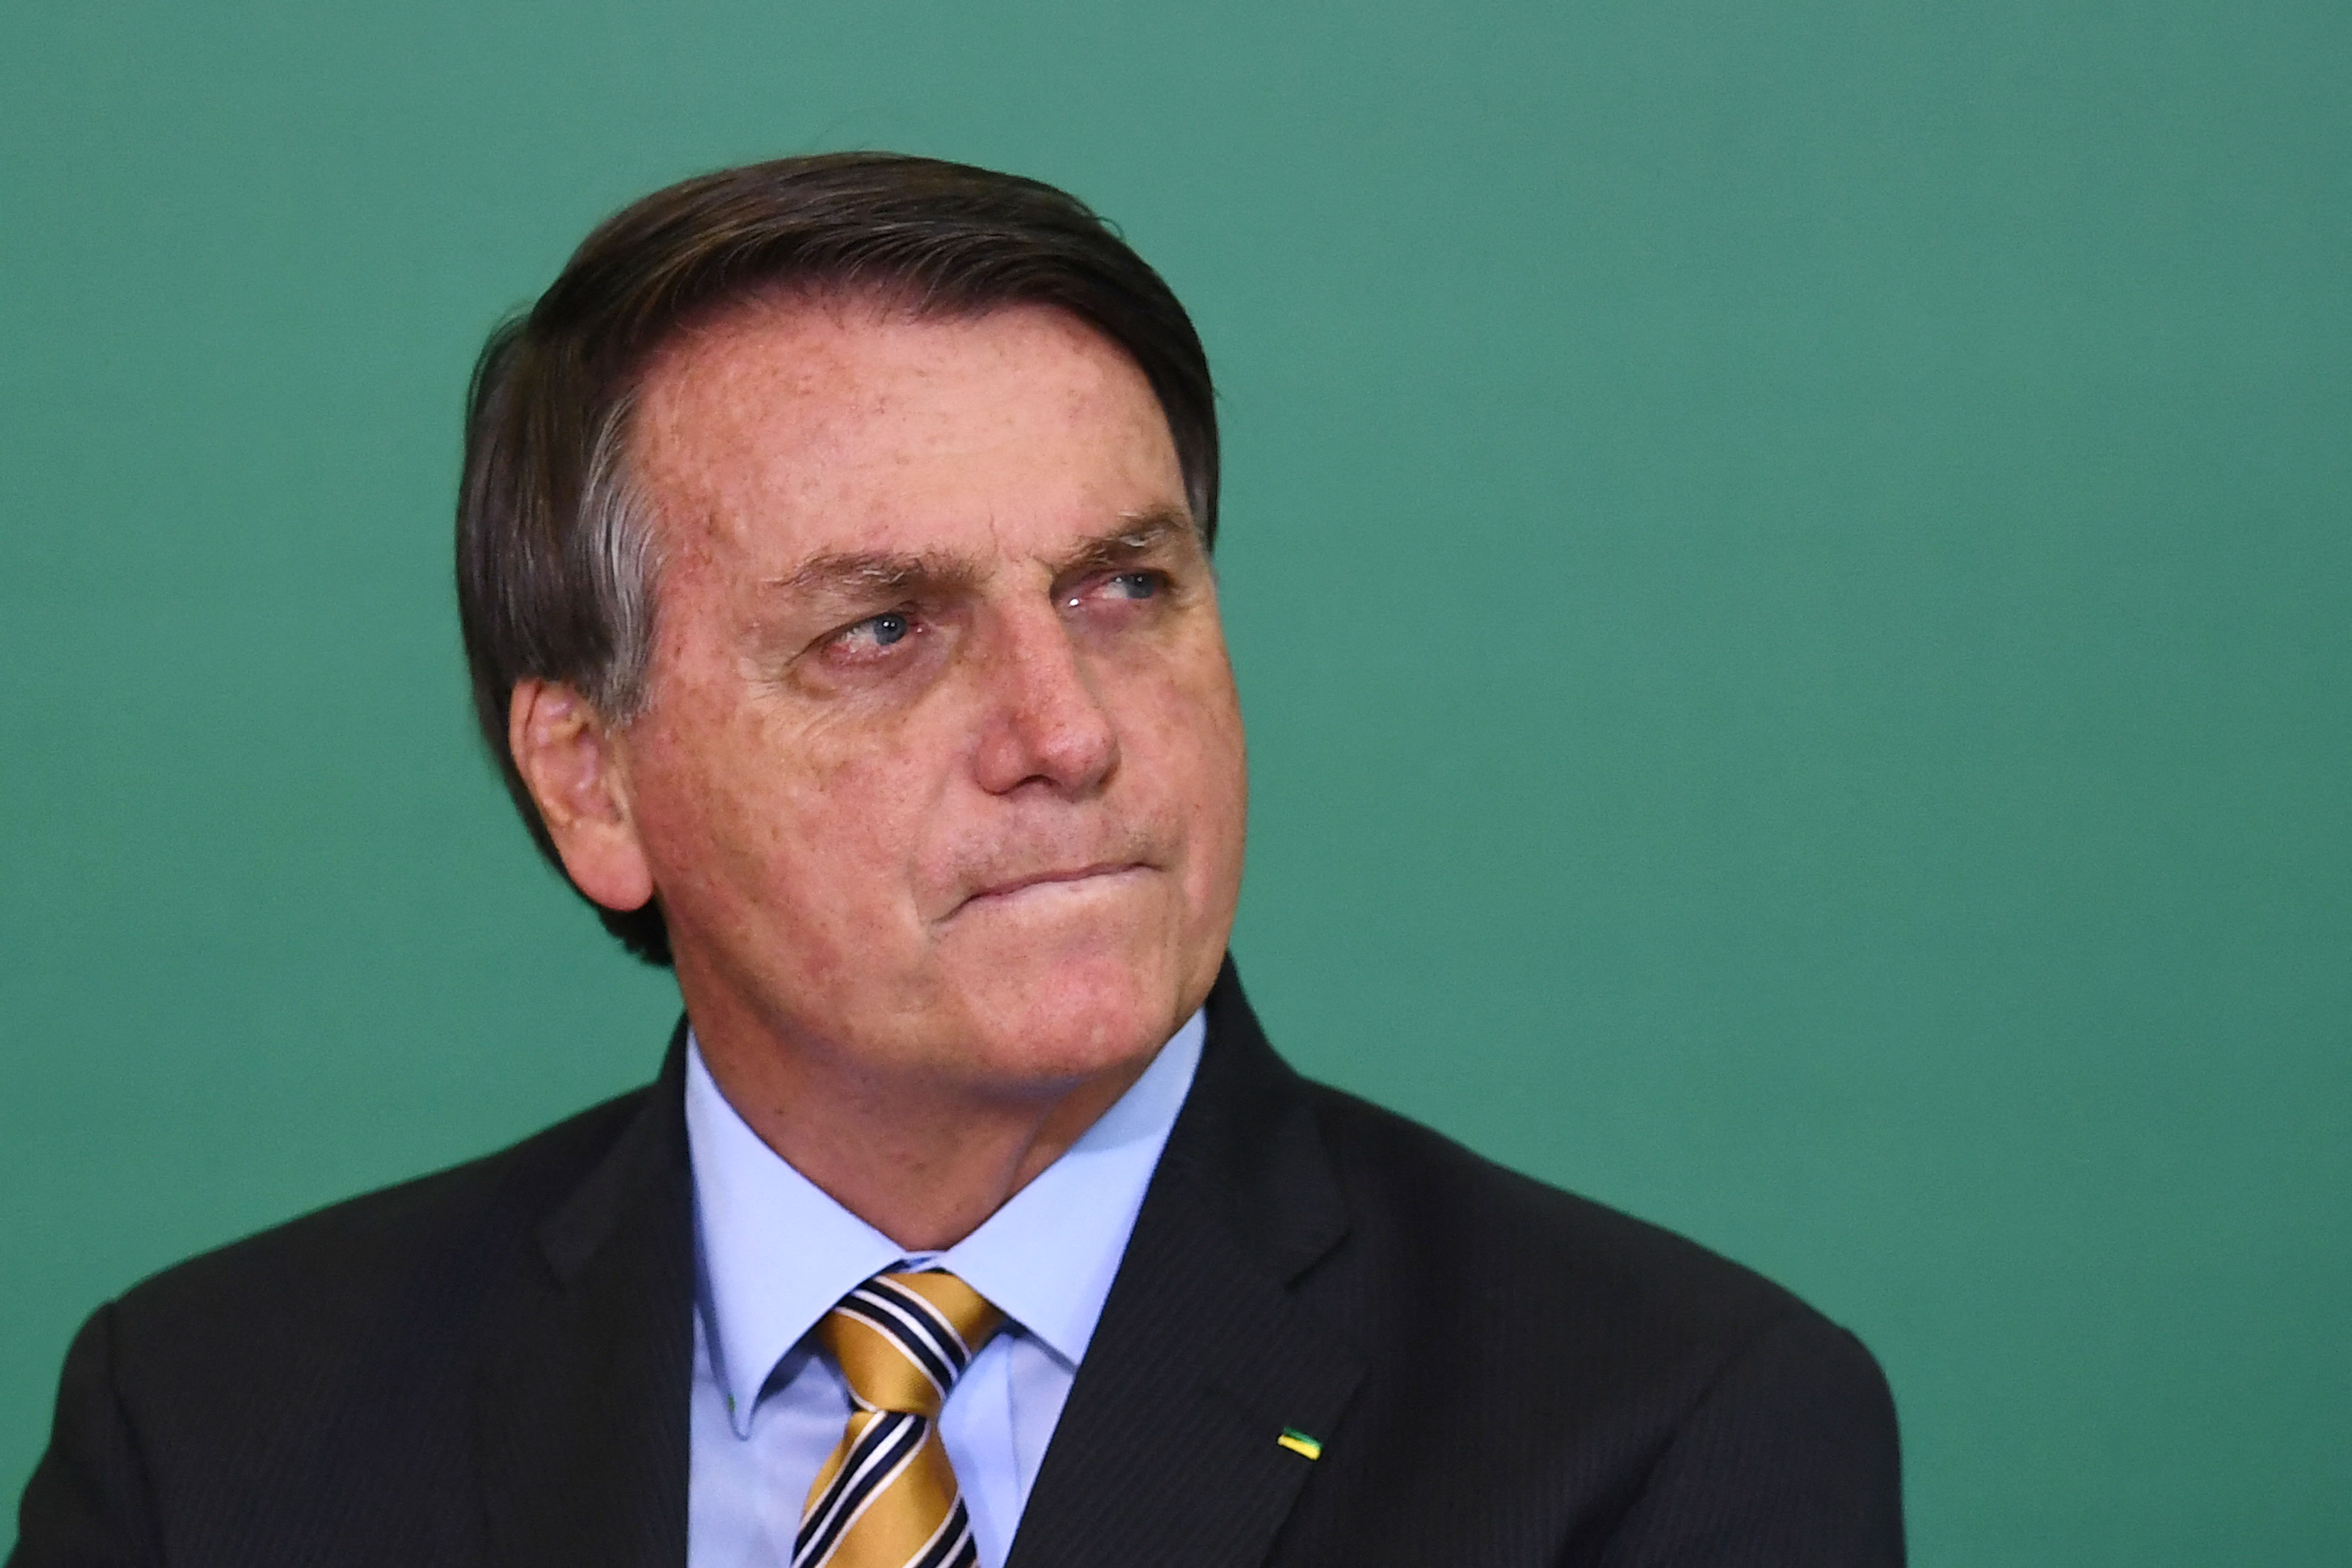 Három nappal a választás után már legalább a brazil alelnök elismerte Bolsonaro vereségét